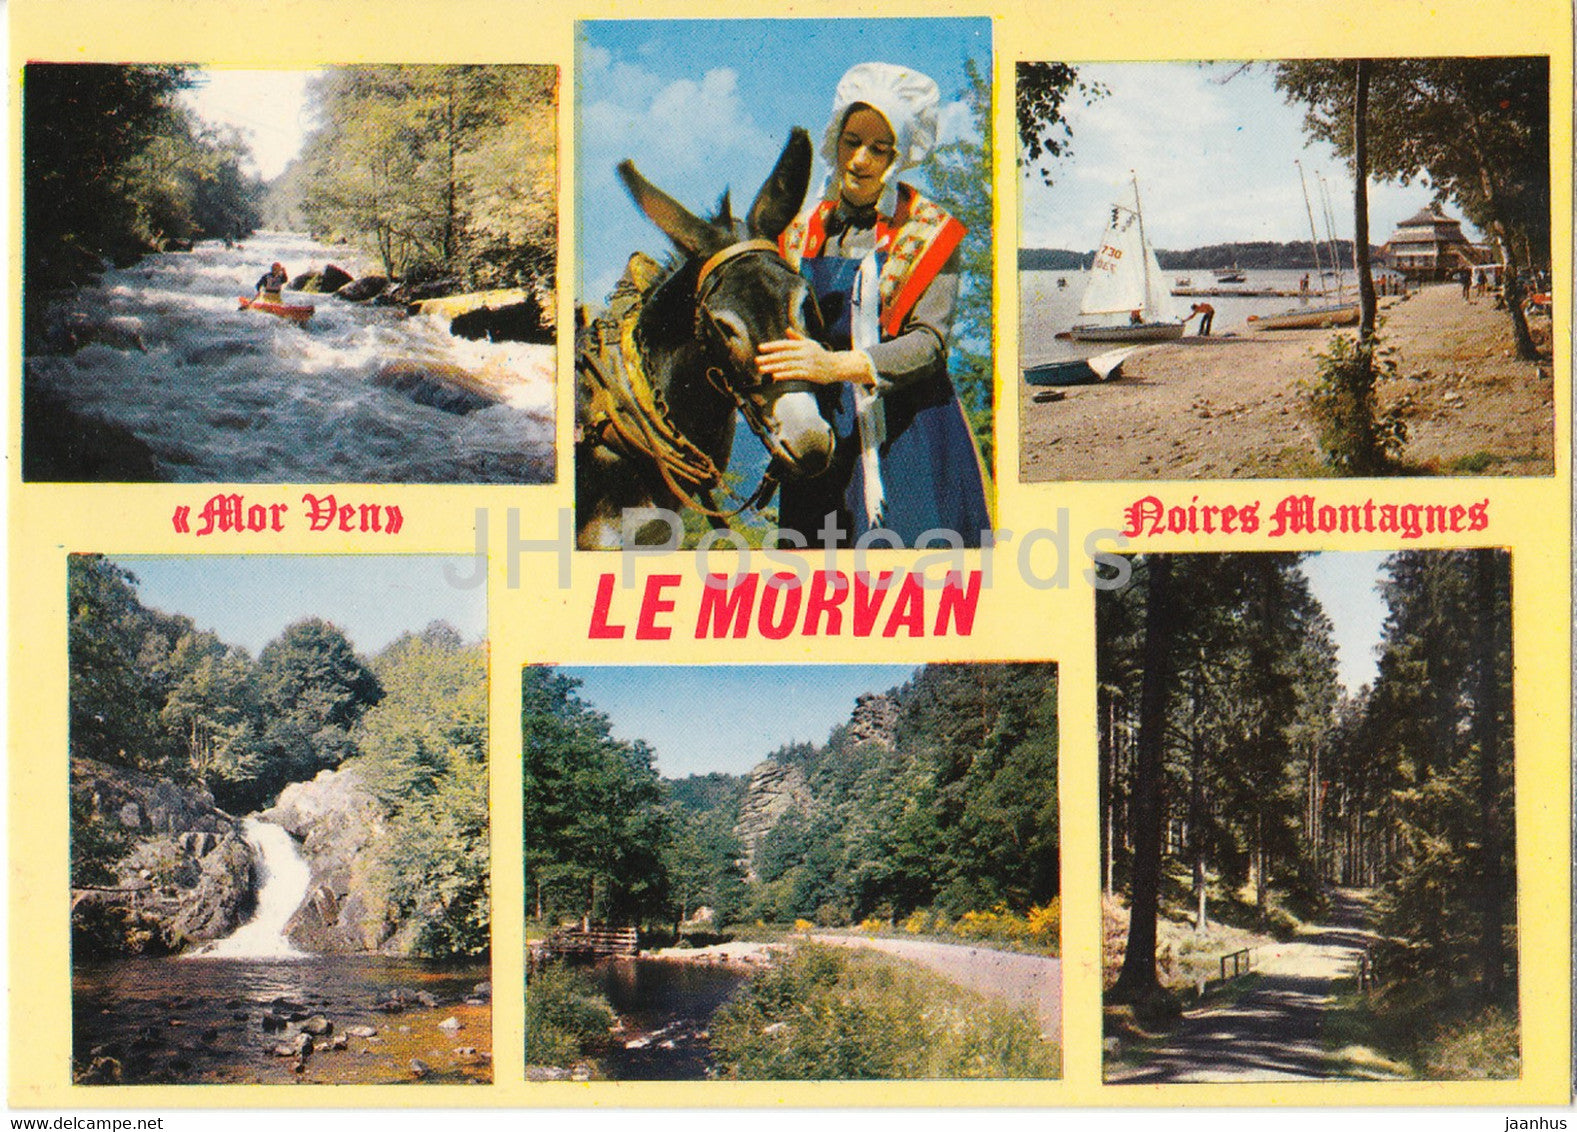 Le Morvan - Mor Ven - Noires Montagnes - donkey - folk costumes - sailing boat - France - unused - JH Postcards